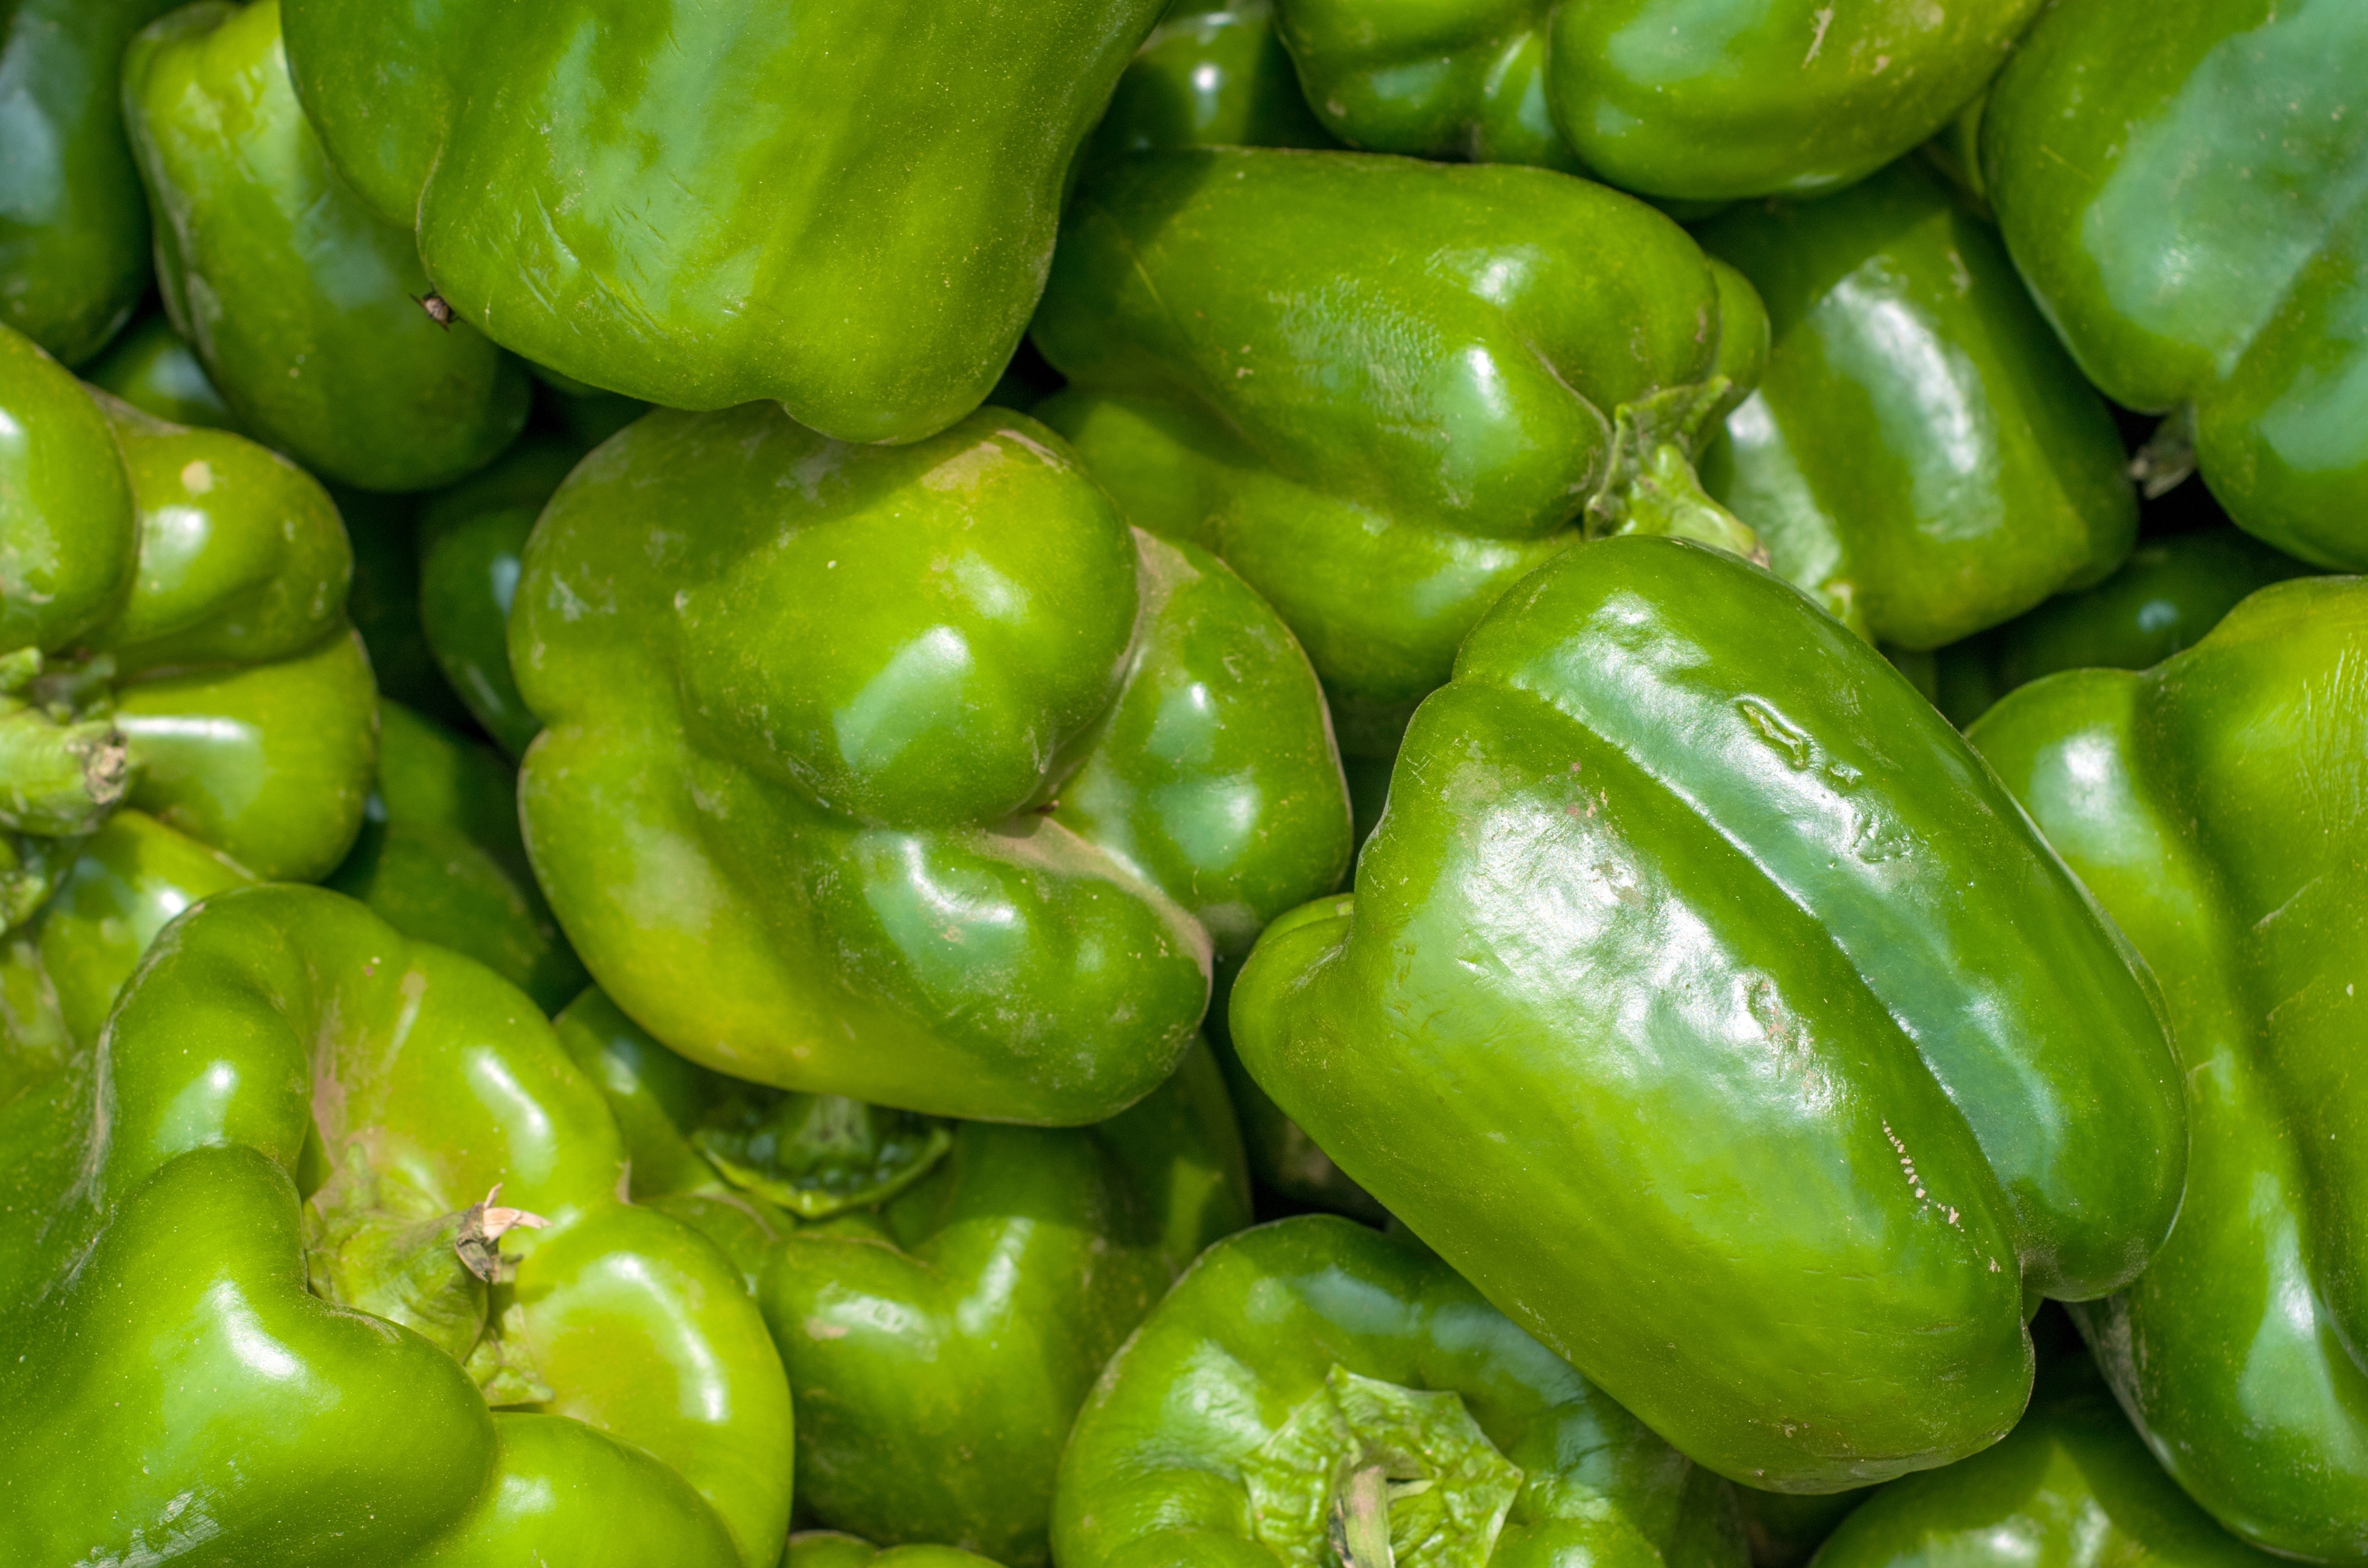 green bell pepper lot